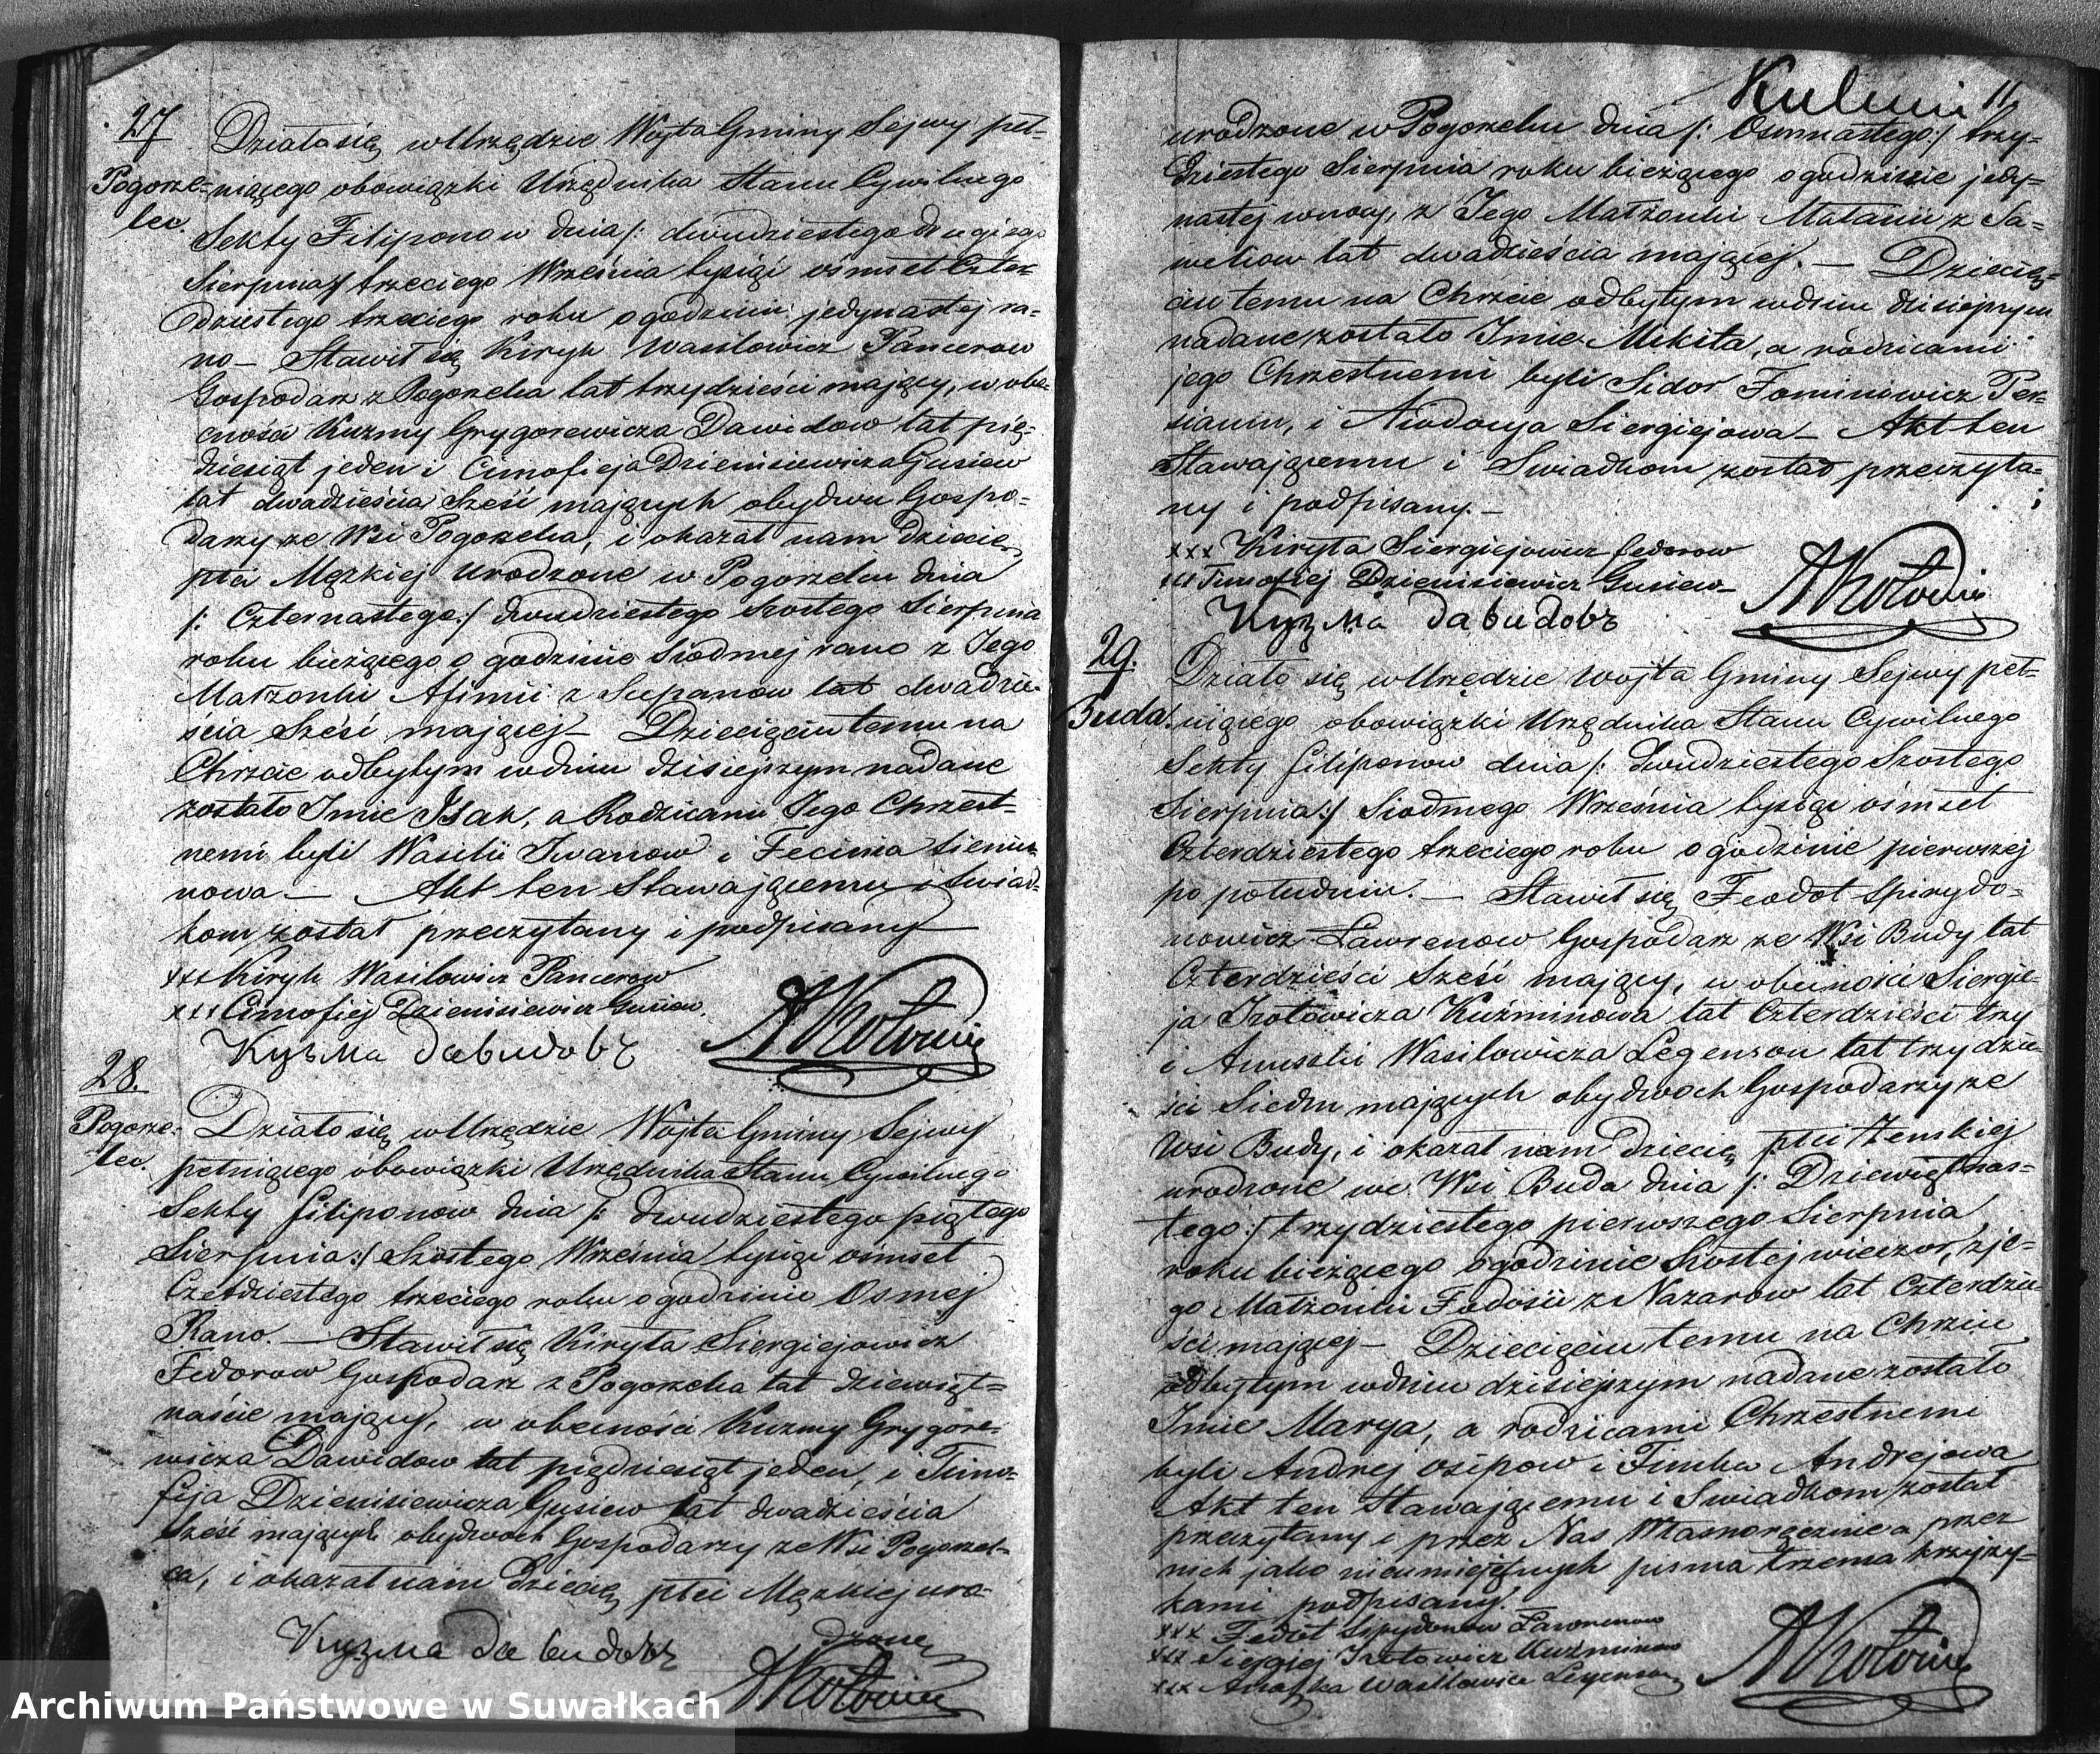 Skan z jednostki: Duplikat Akt Urodzonych Zejścia i Zaślubionych Sekty Filiponów w Gminie Sejwy Powiecie Sejneńskim Gubernii Augustowskiej z Roku 1843